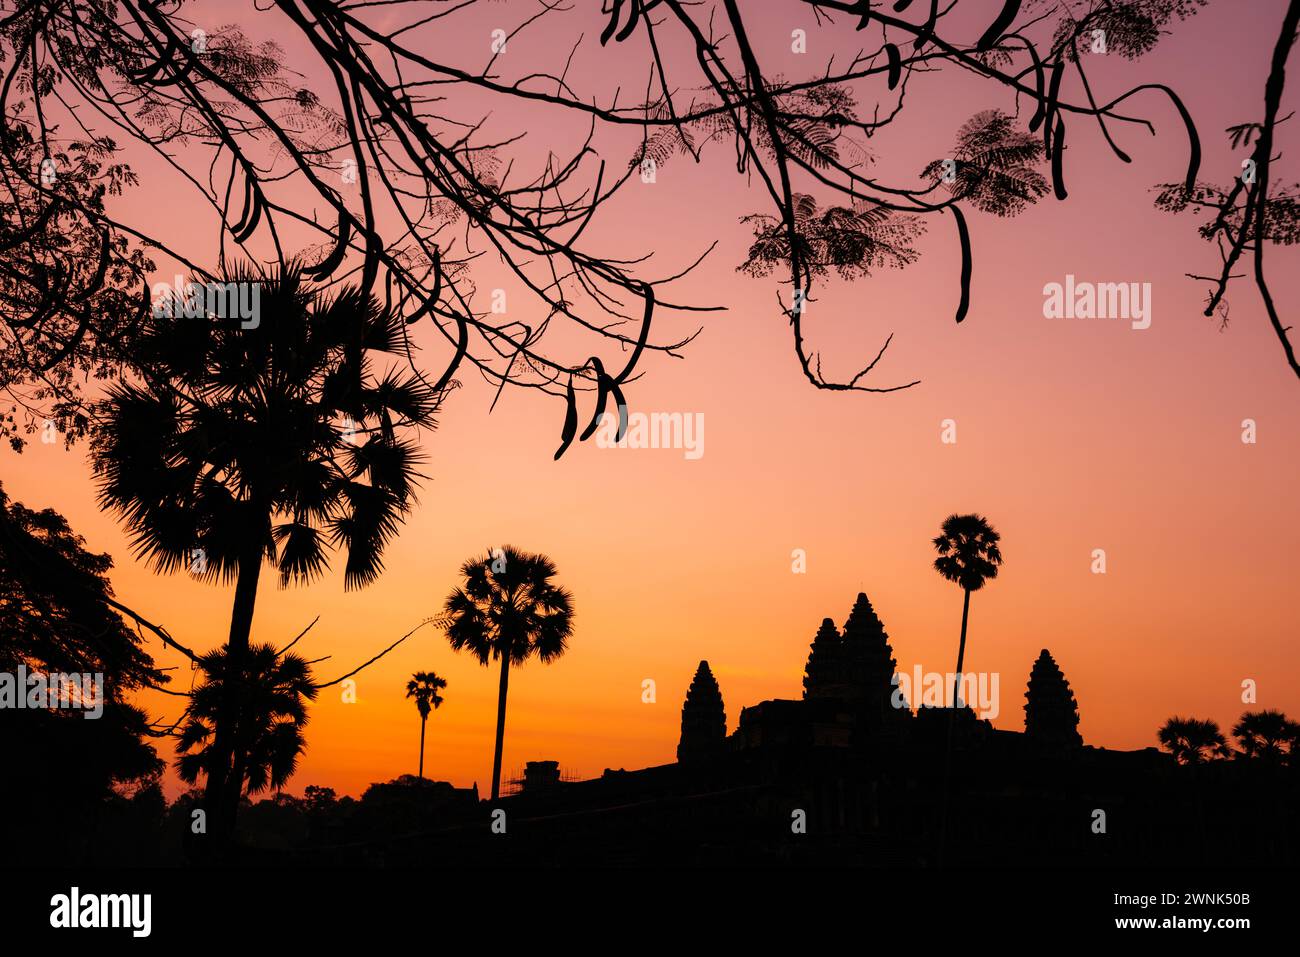 Angkor Wat, un complexe de temples bouddhistes-hindous classé au patrimoine mondial de l'UNESCO, à l'aube, près de Siem Reap, Cambodge Banque D'Images